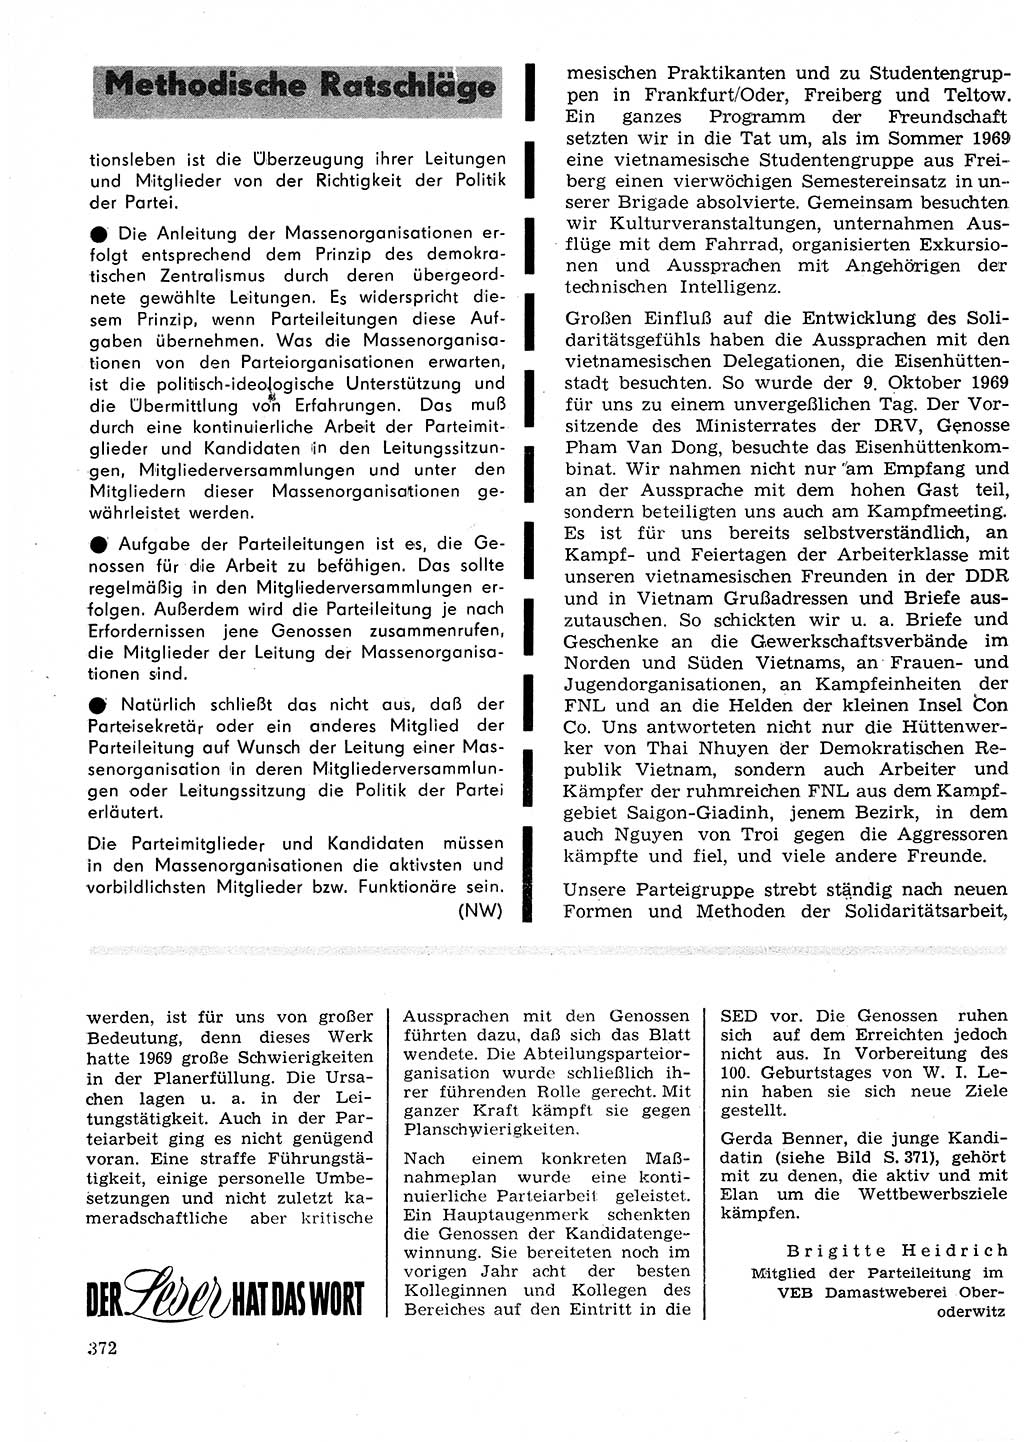 Neuer Weg (NW), Organ des Zentralkomitees (ZK) der SED (Sozialistische Einheitspartei Deutschlands) für Fragen des Parteilebens, 25. Jahrgang [Deutsche Demokratische Republik (DDR)] 1970, Seite 372 (NW ZK SED DDR 1970, S. 372)